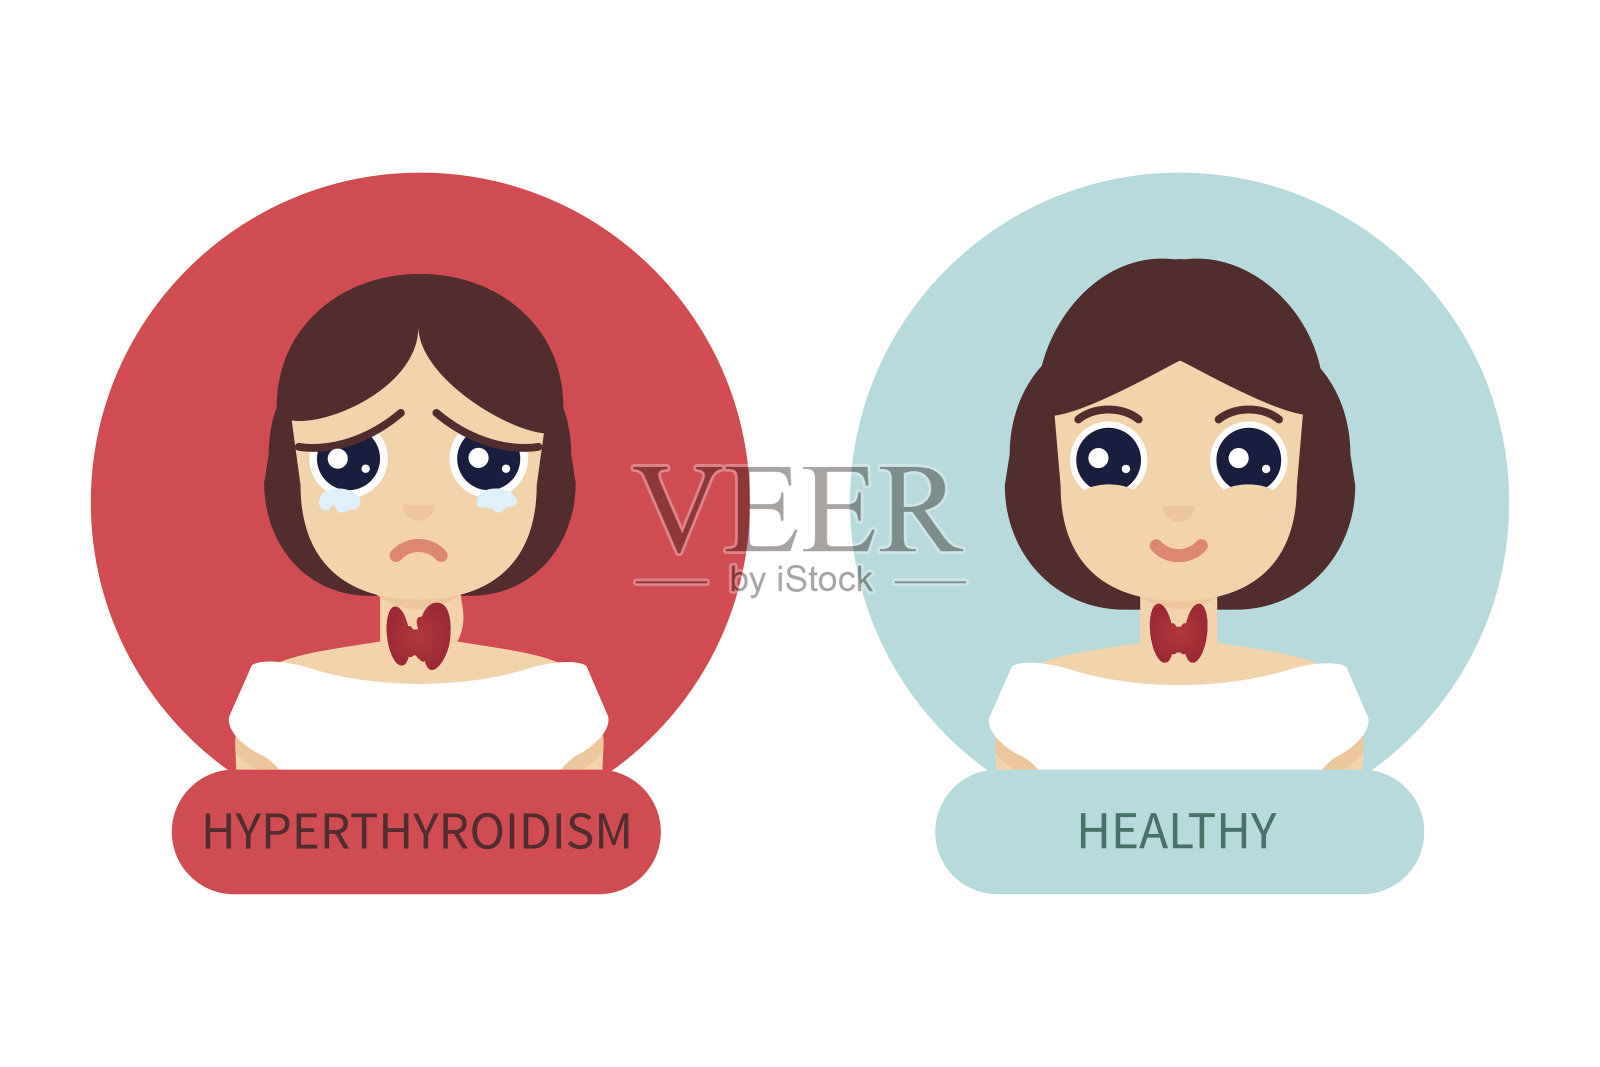 甲状腺正常和甲状腺机能亢进的妇女插画图片素材